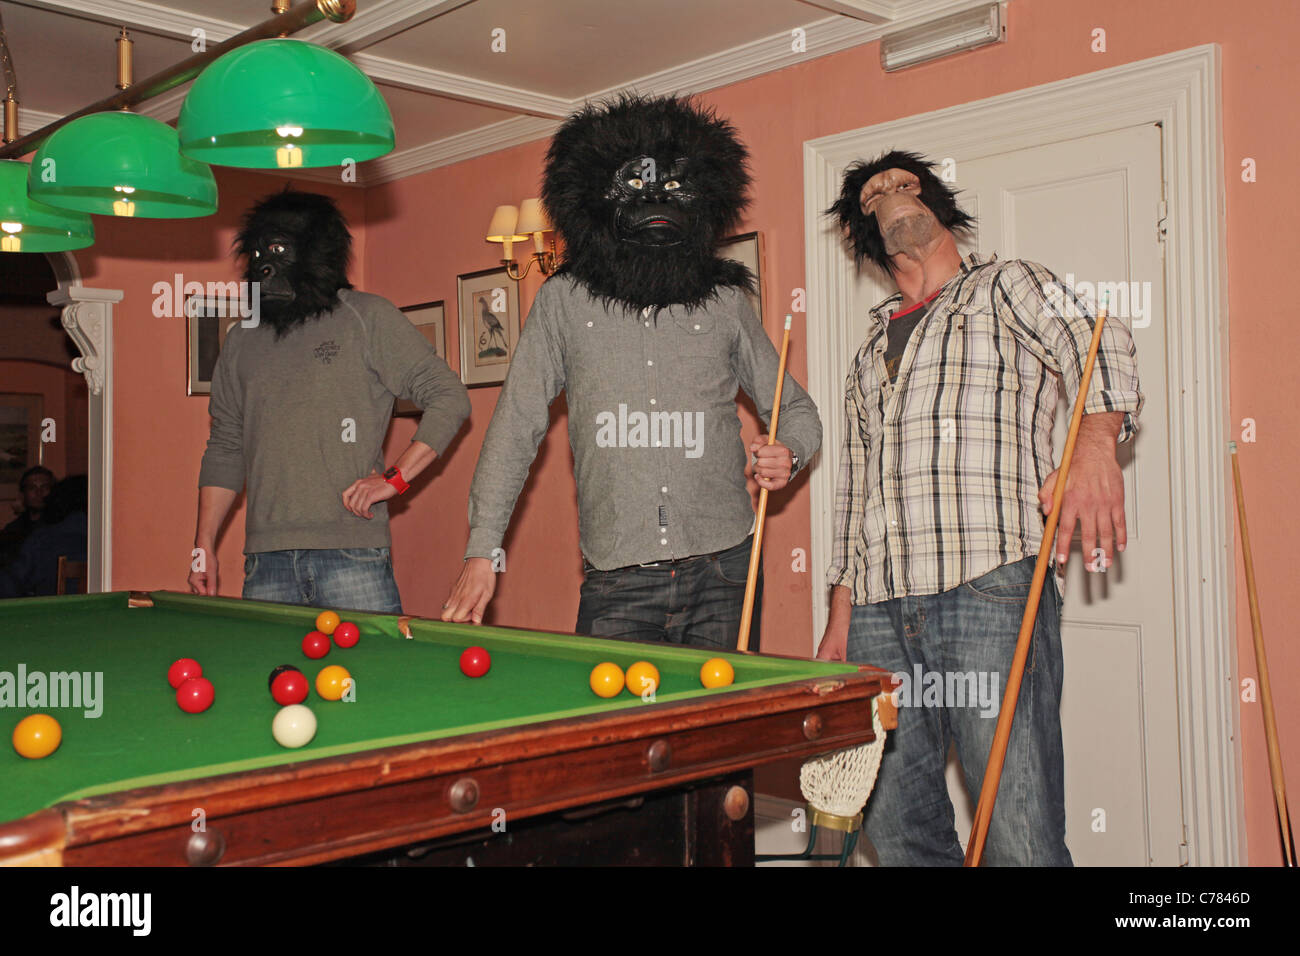 men wearing monkey masks playing pool Stock Photo